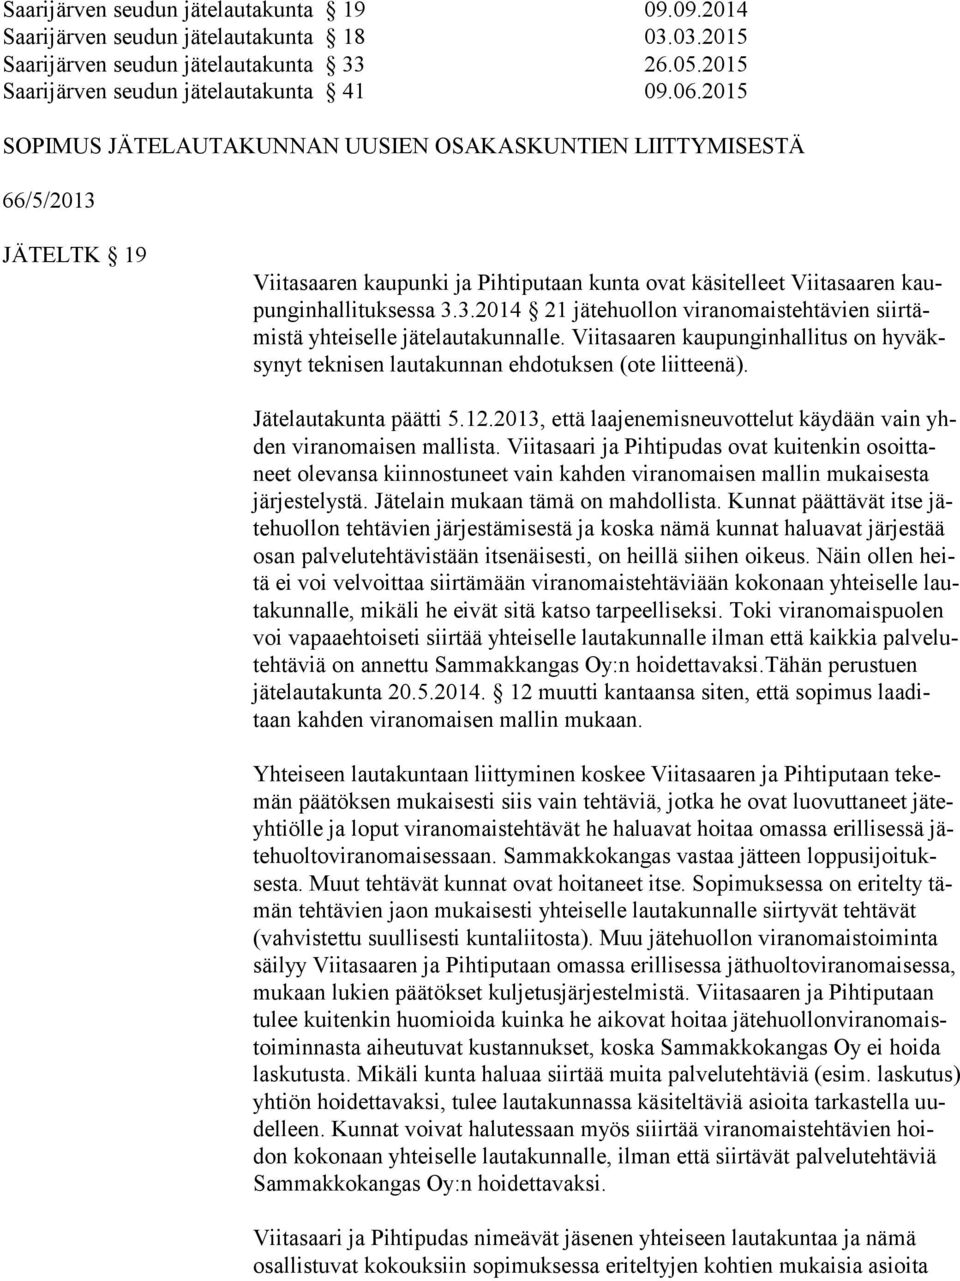 Viitasaaren kaupunginhallitus on hy väksy nyt teknisen lautakunnan ehdotuksen (ote liitteenä). Jätelautakunta päätti 5.12.2013, että laajenemisneuvottelut käydään vain yhden viranomaisen mallista.